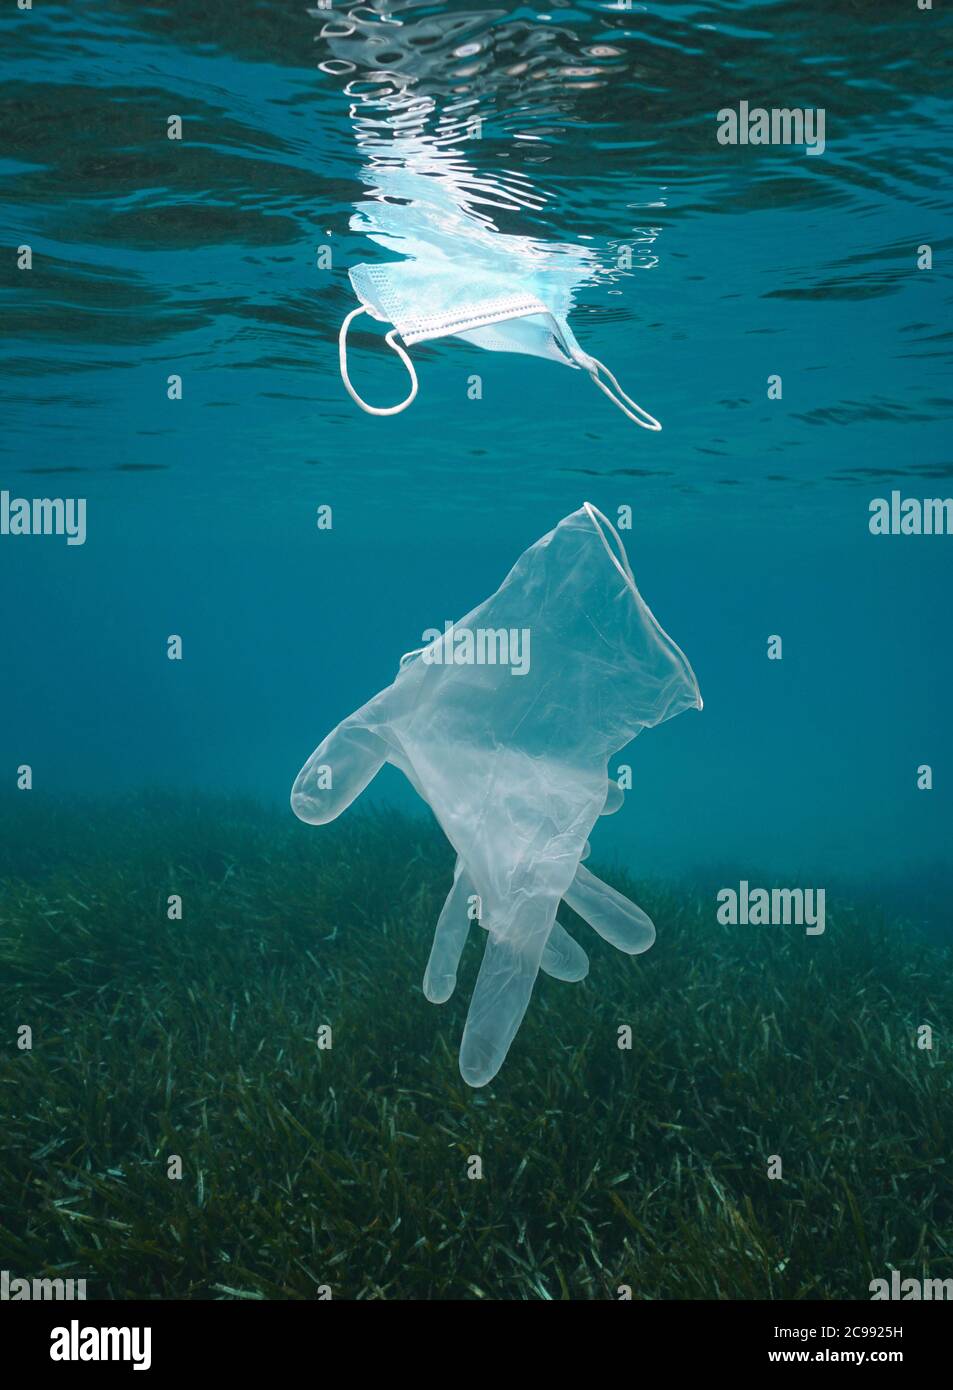 Pollution des déchets plastiques sous l'eau dans la mer, gants et masque facial, pandémie de coronavirus COVID-19, mer Méditerranée Banque D'Images